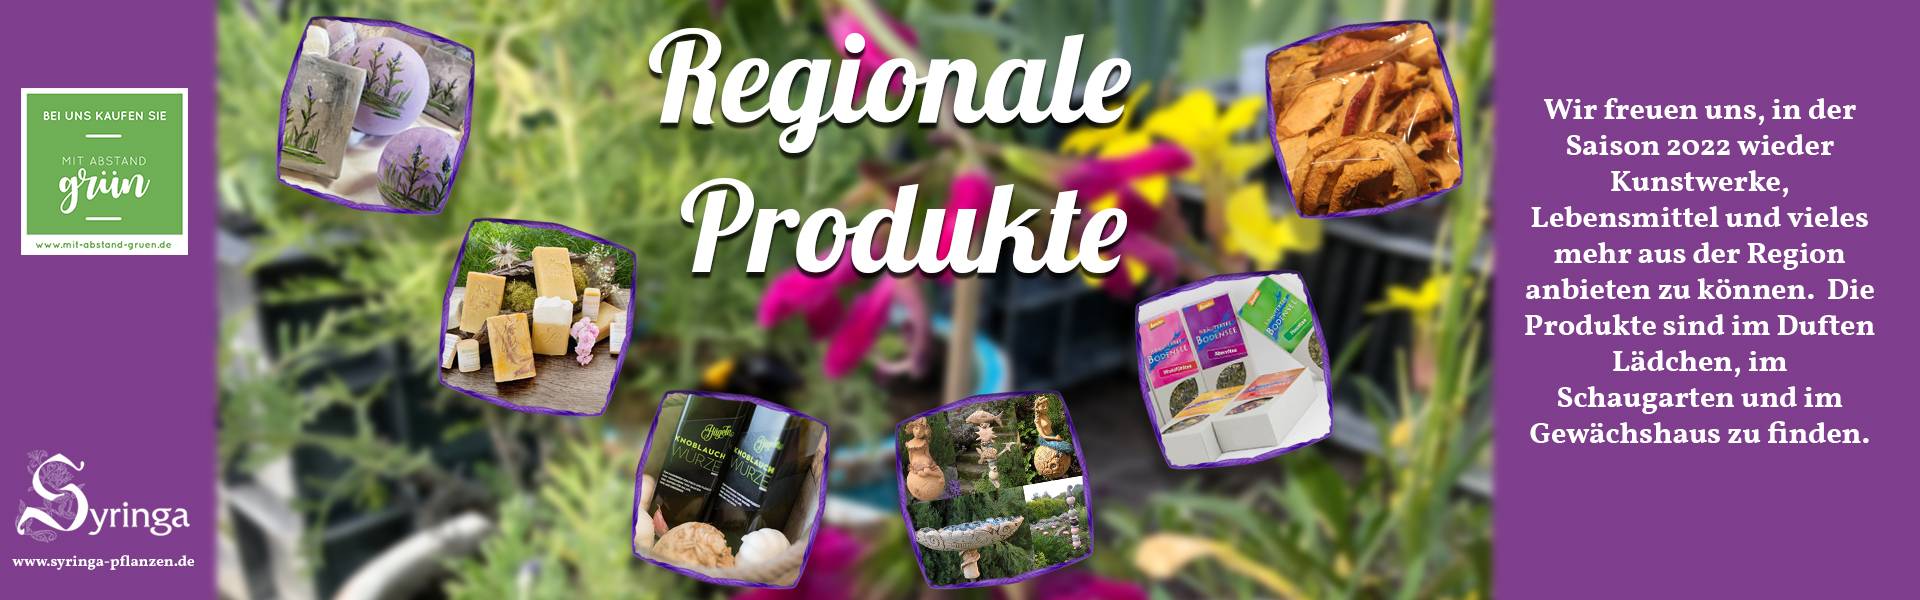 Regionale_Produkte2022